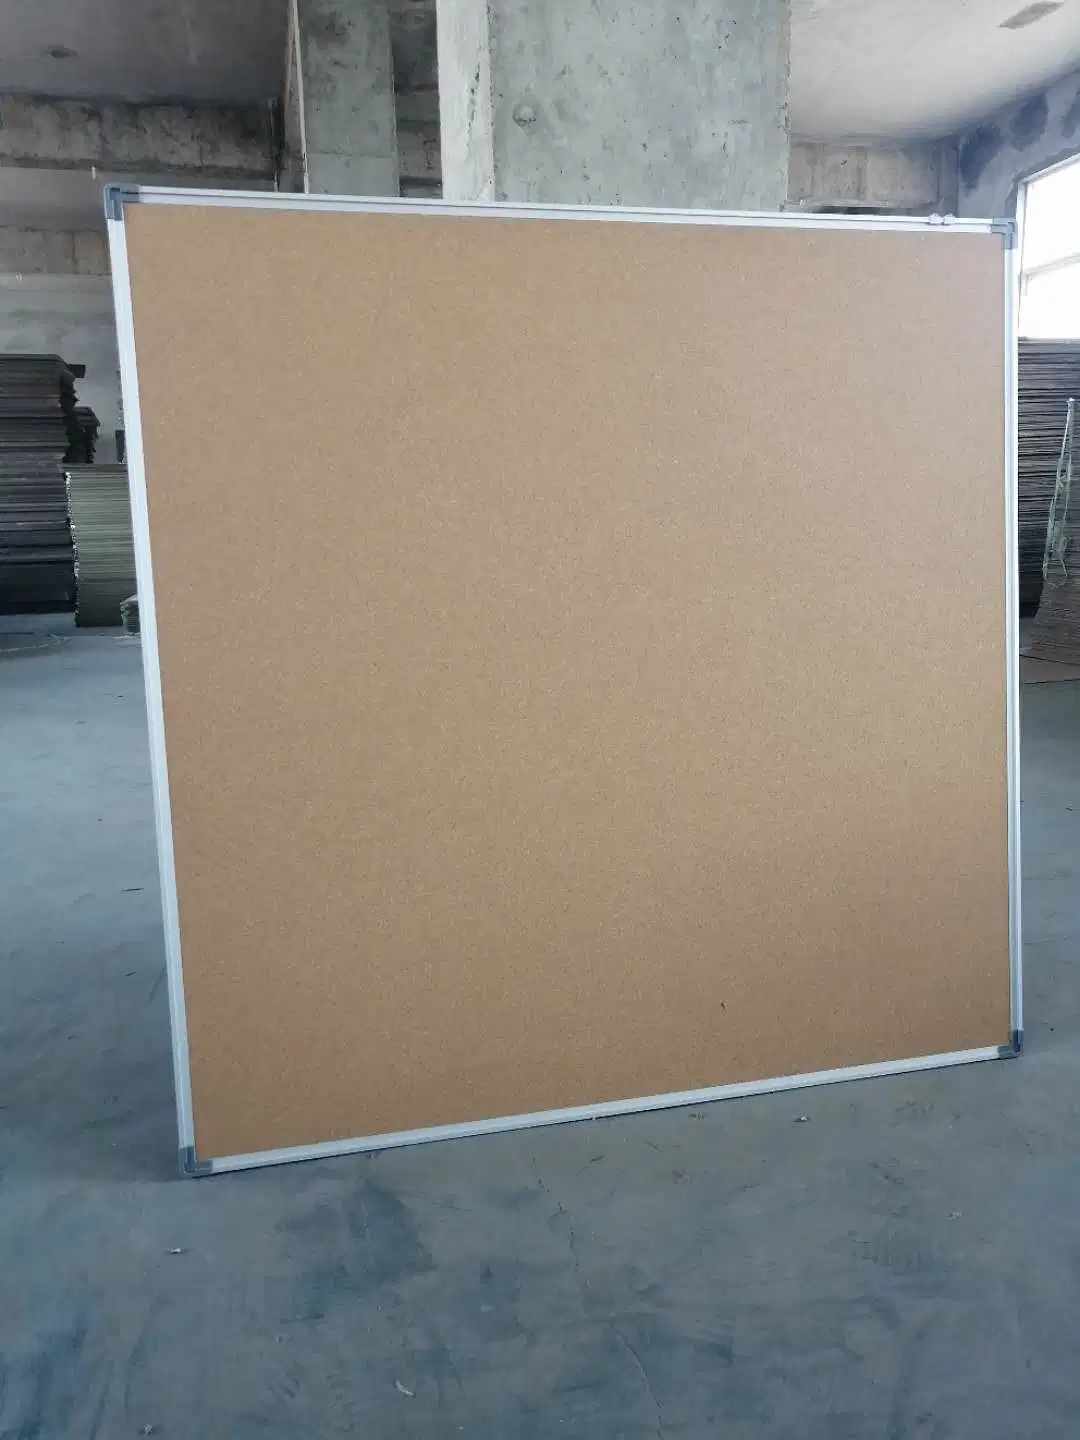 Senko 90X120cm Corkboard Cork Board Bulletin Tack Board